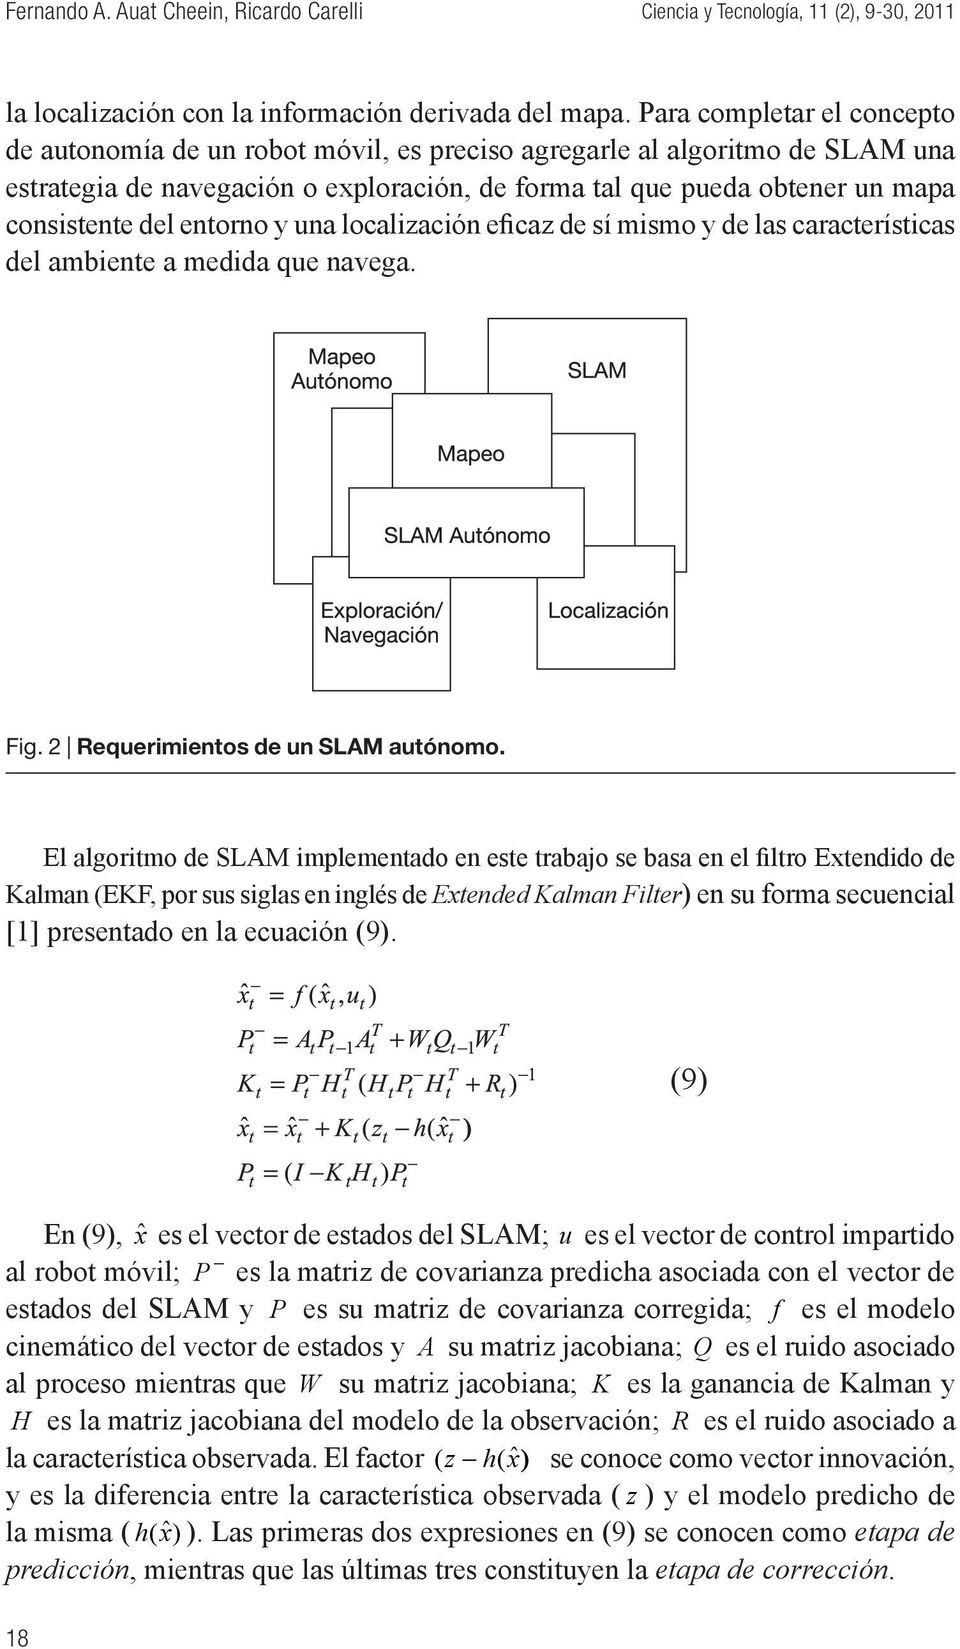 entorno y una localización eficaz de sí mismo y de las características del ambiente a medida que navega. Fig. 2 Requerimientos de un SLAM autónomo.